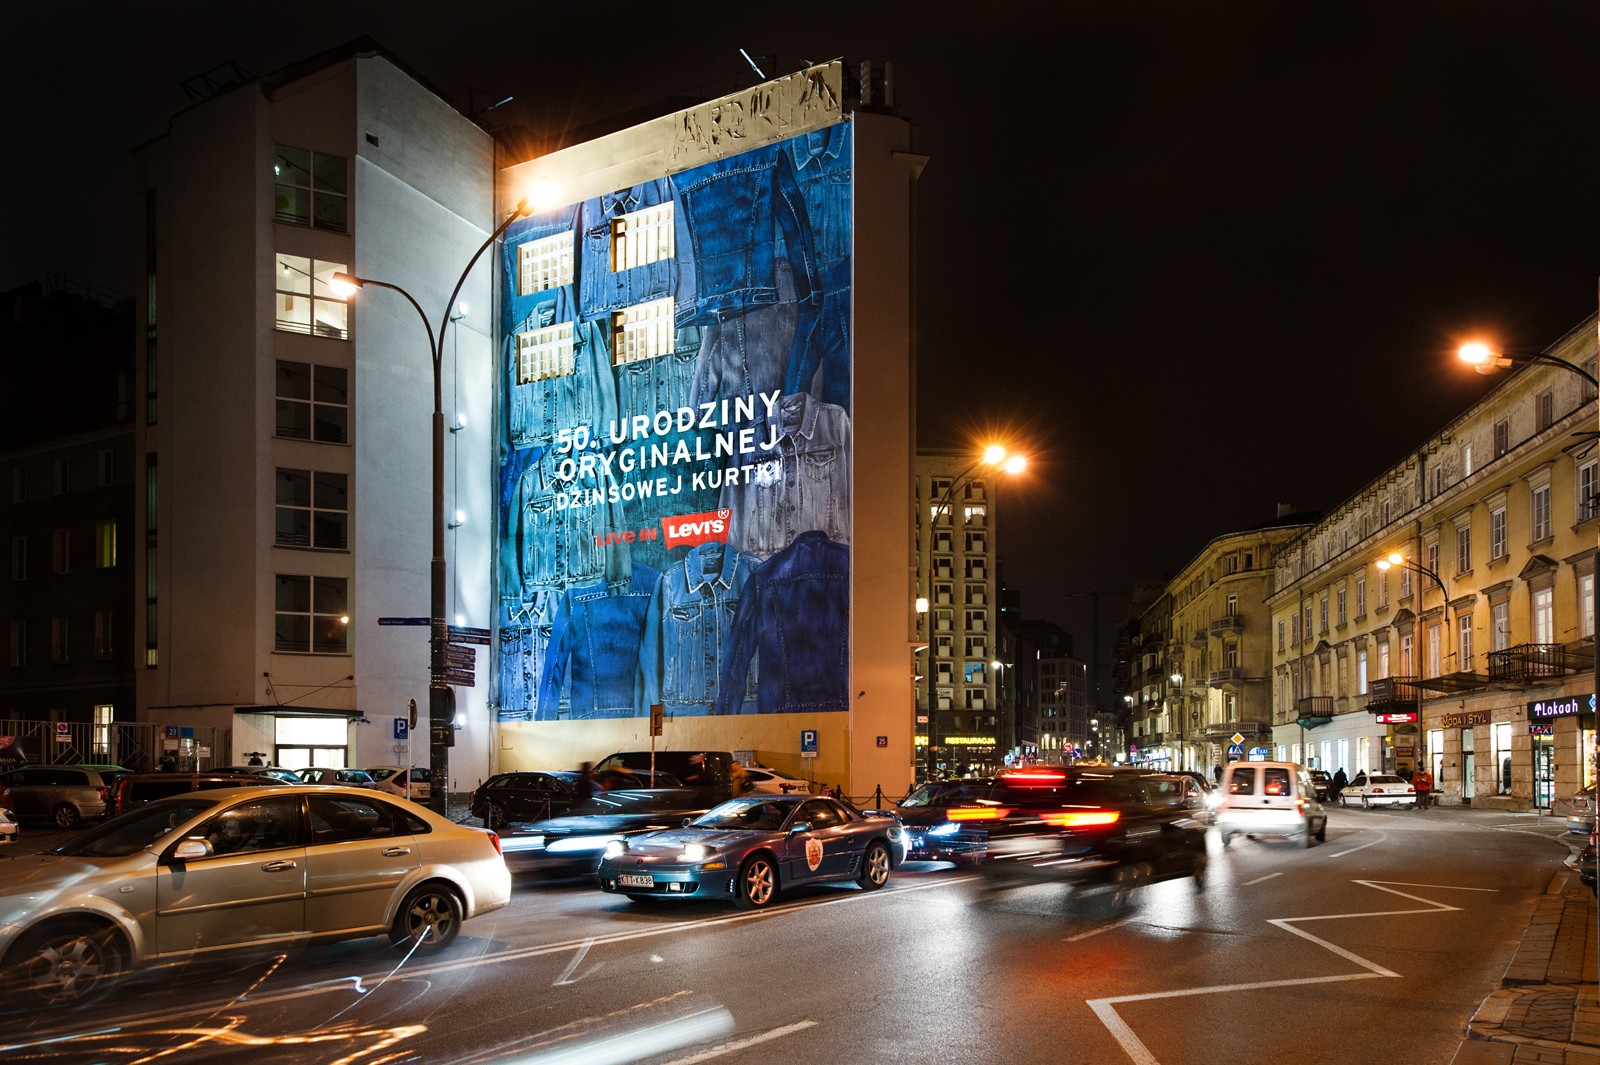 Mural reklamowy na zlecenie Levis na ścianie przy ulicy Brackiej w Warszawie | 50.URODZINY ORYGINALNEJ DŻINSOWEJ KURTKI | Portfolio